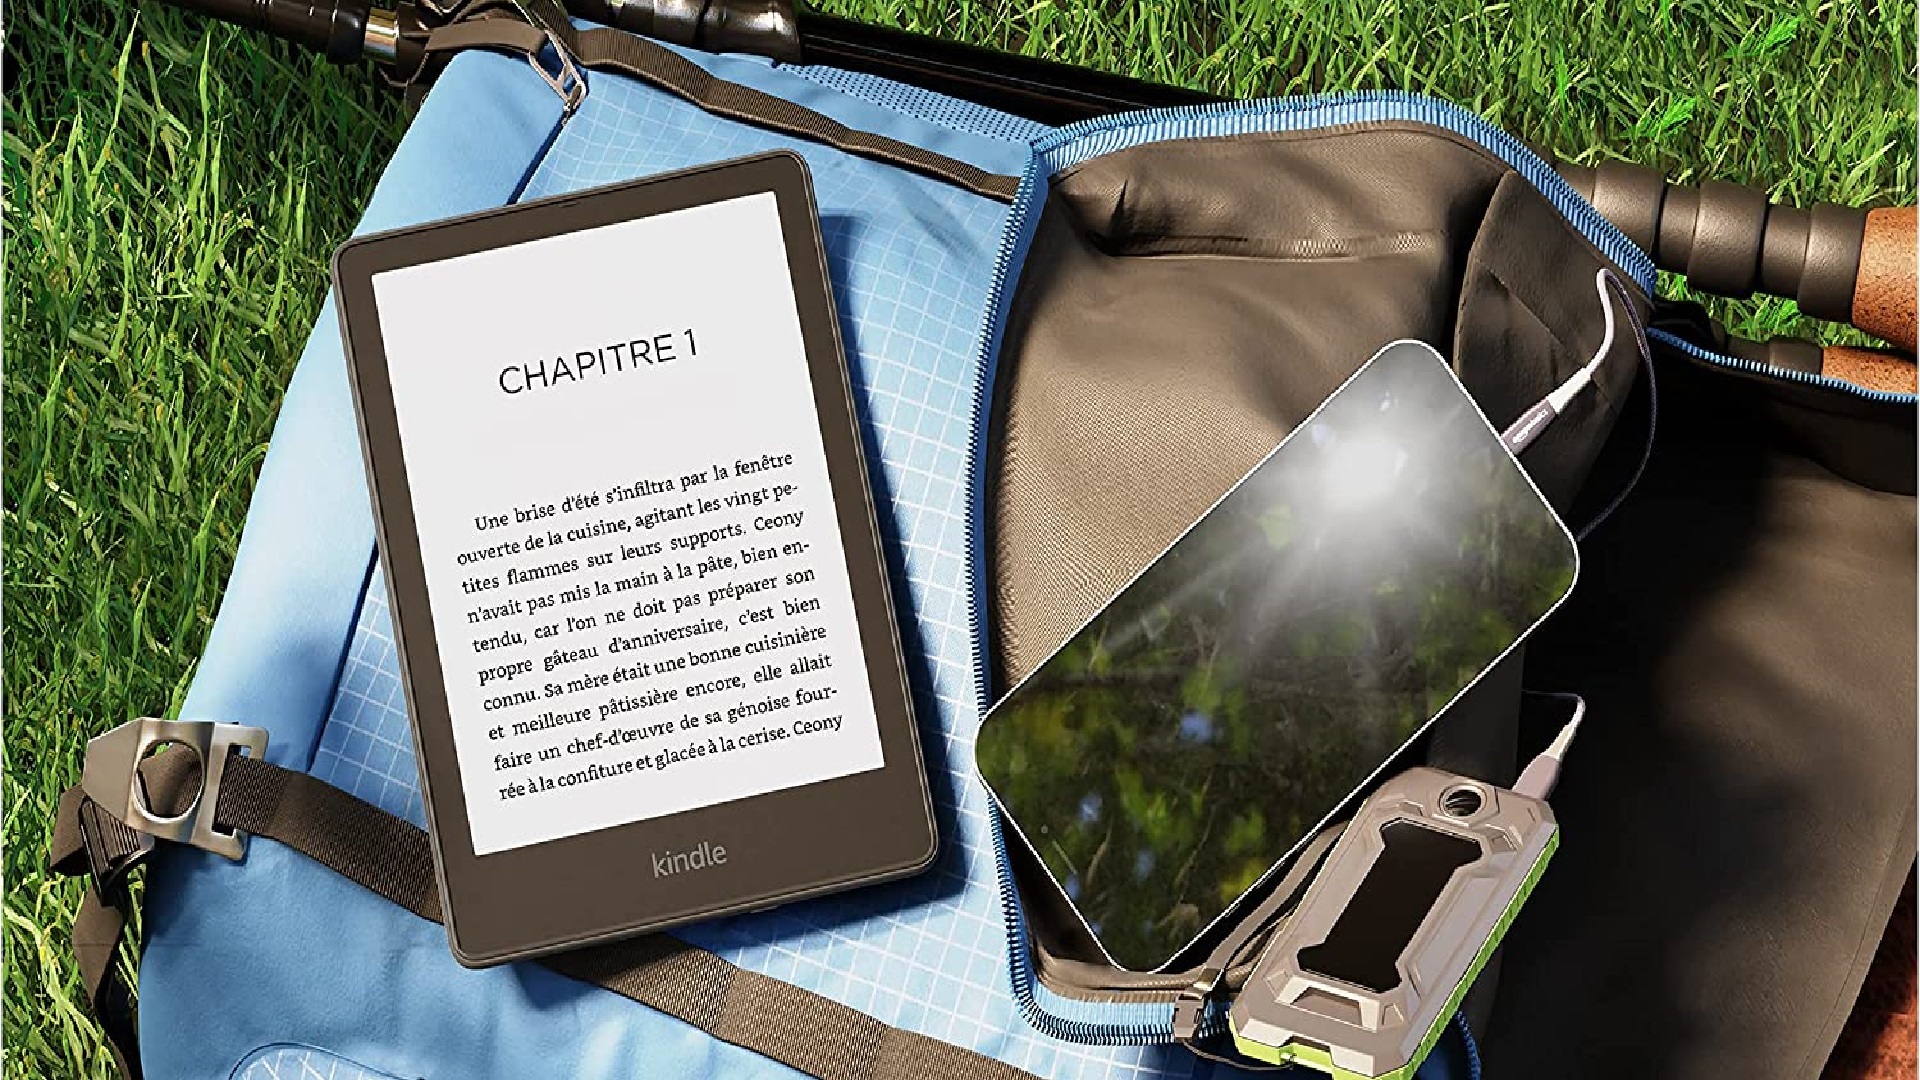 Les Kindle sont en promo pour le printemps : quel modèle choisirez-vous ? -  Numerama